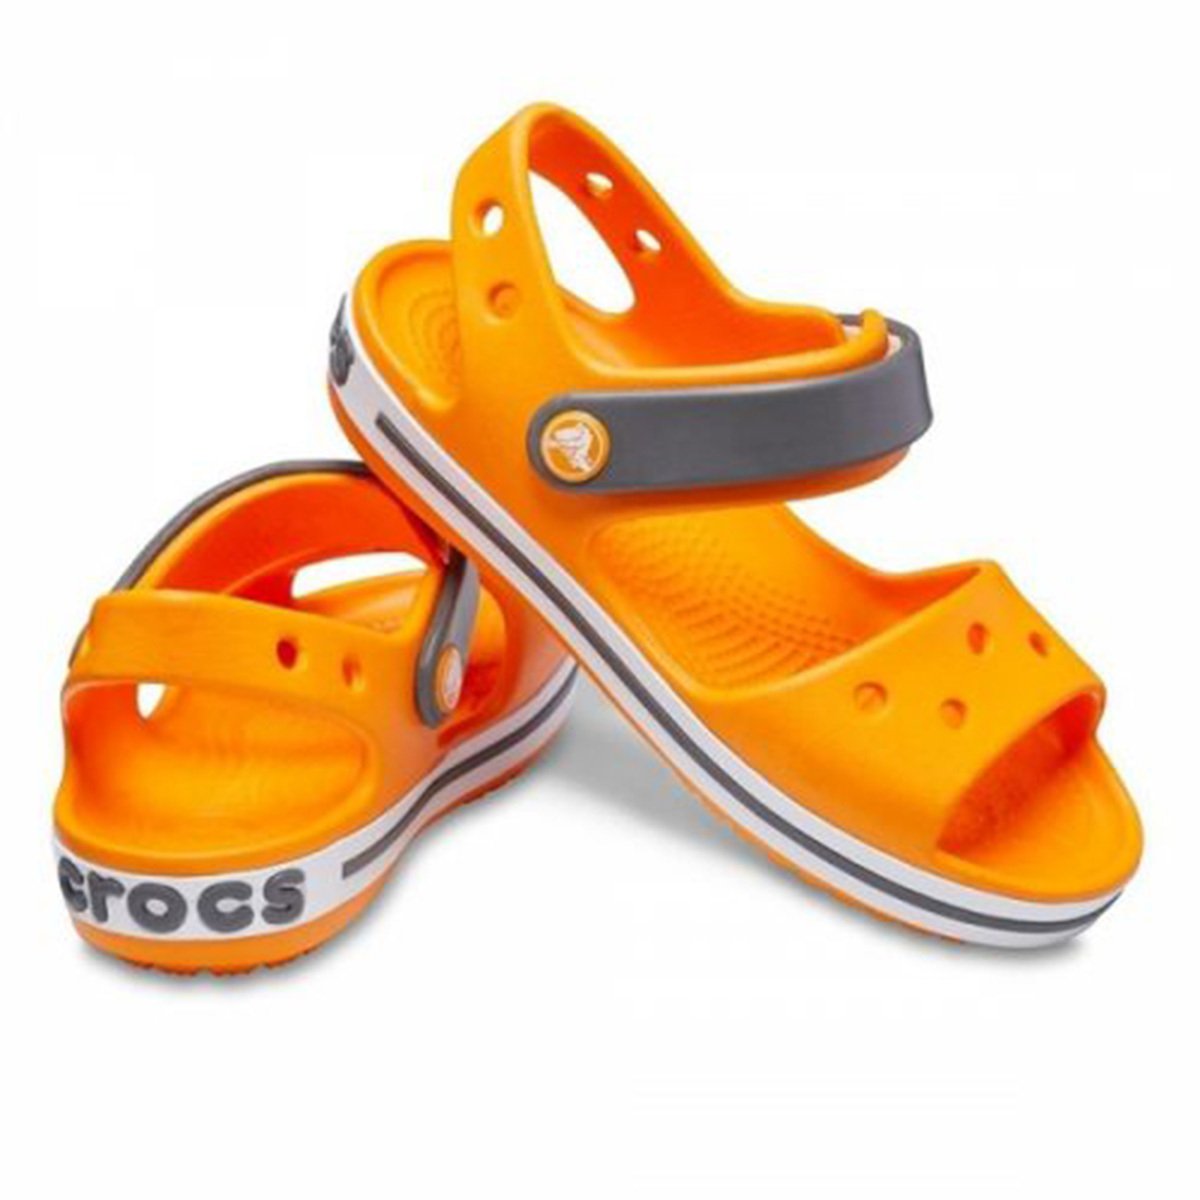 Крокс сандали. Детские шлепки крокс. Crocs Clog шлёпки. Крокс сандали детские. Crocs 205400-025.